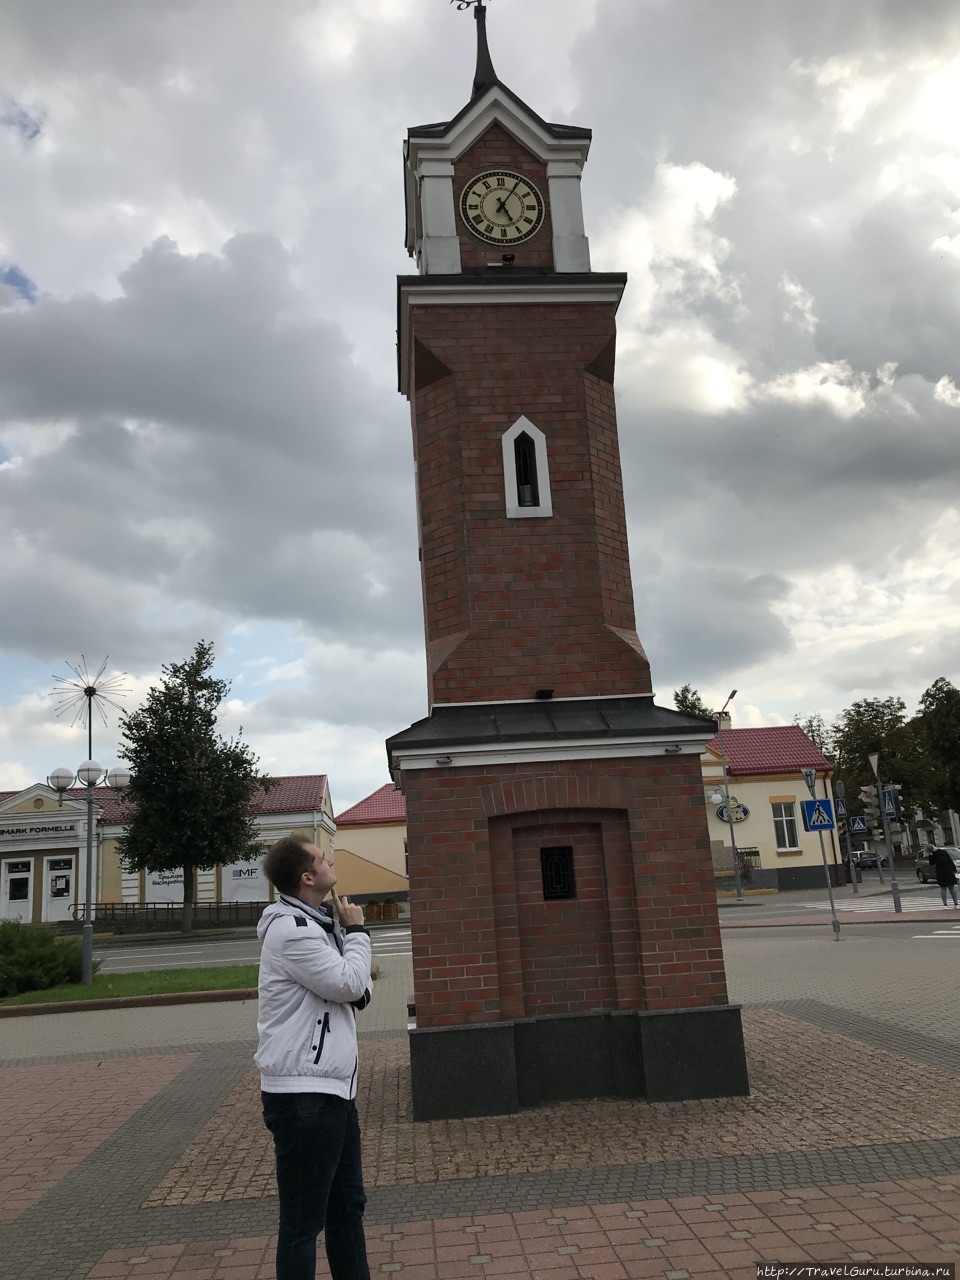 Щучин: город без щук, но с аристократическим наследием Щучин, Беларусь